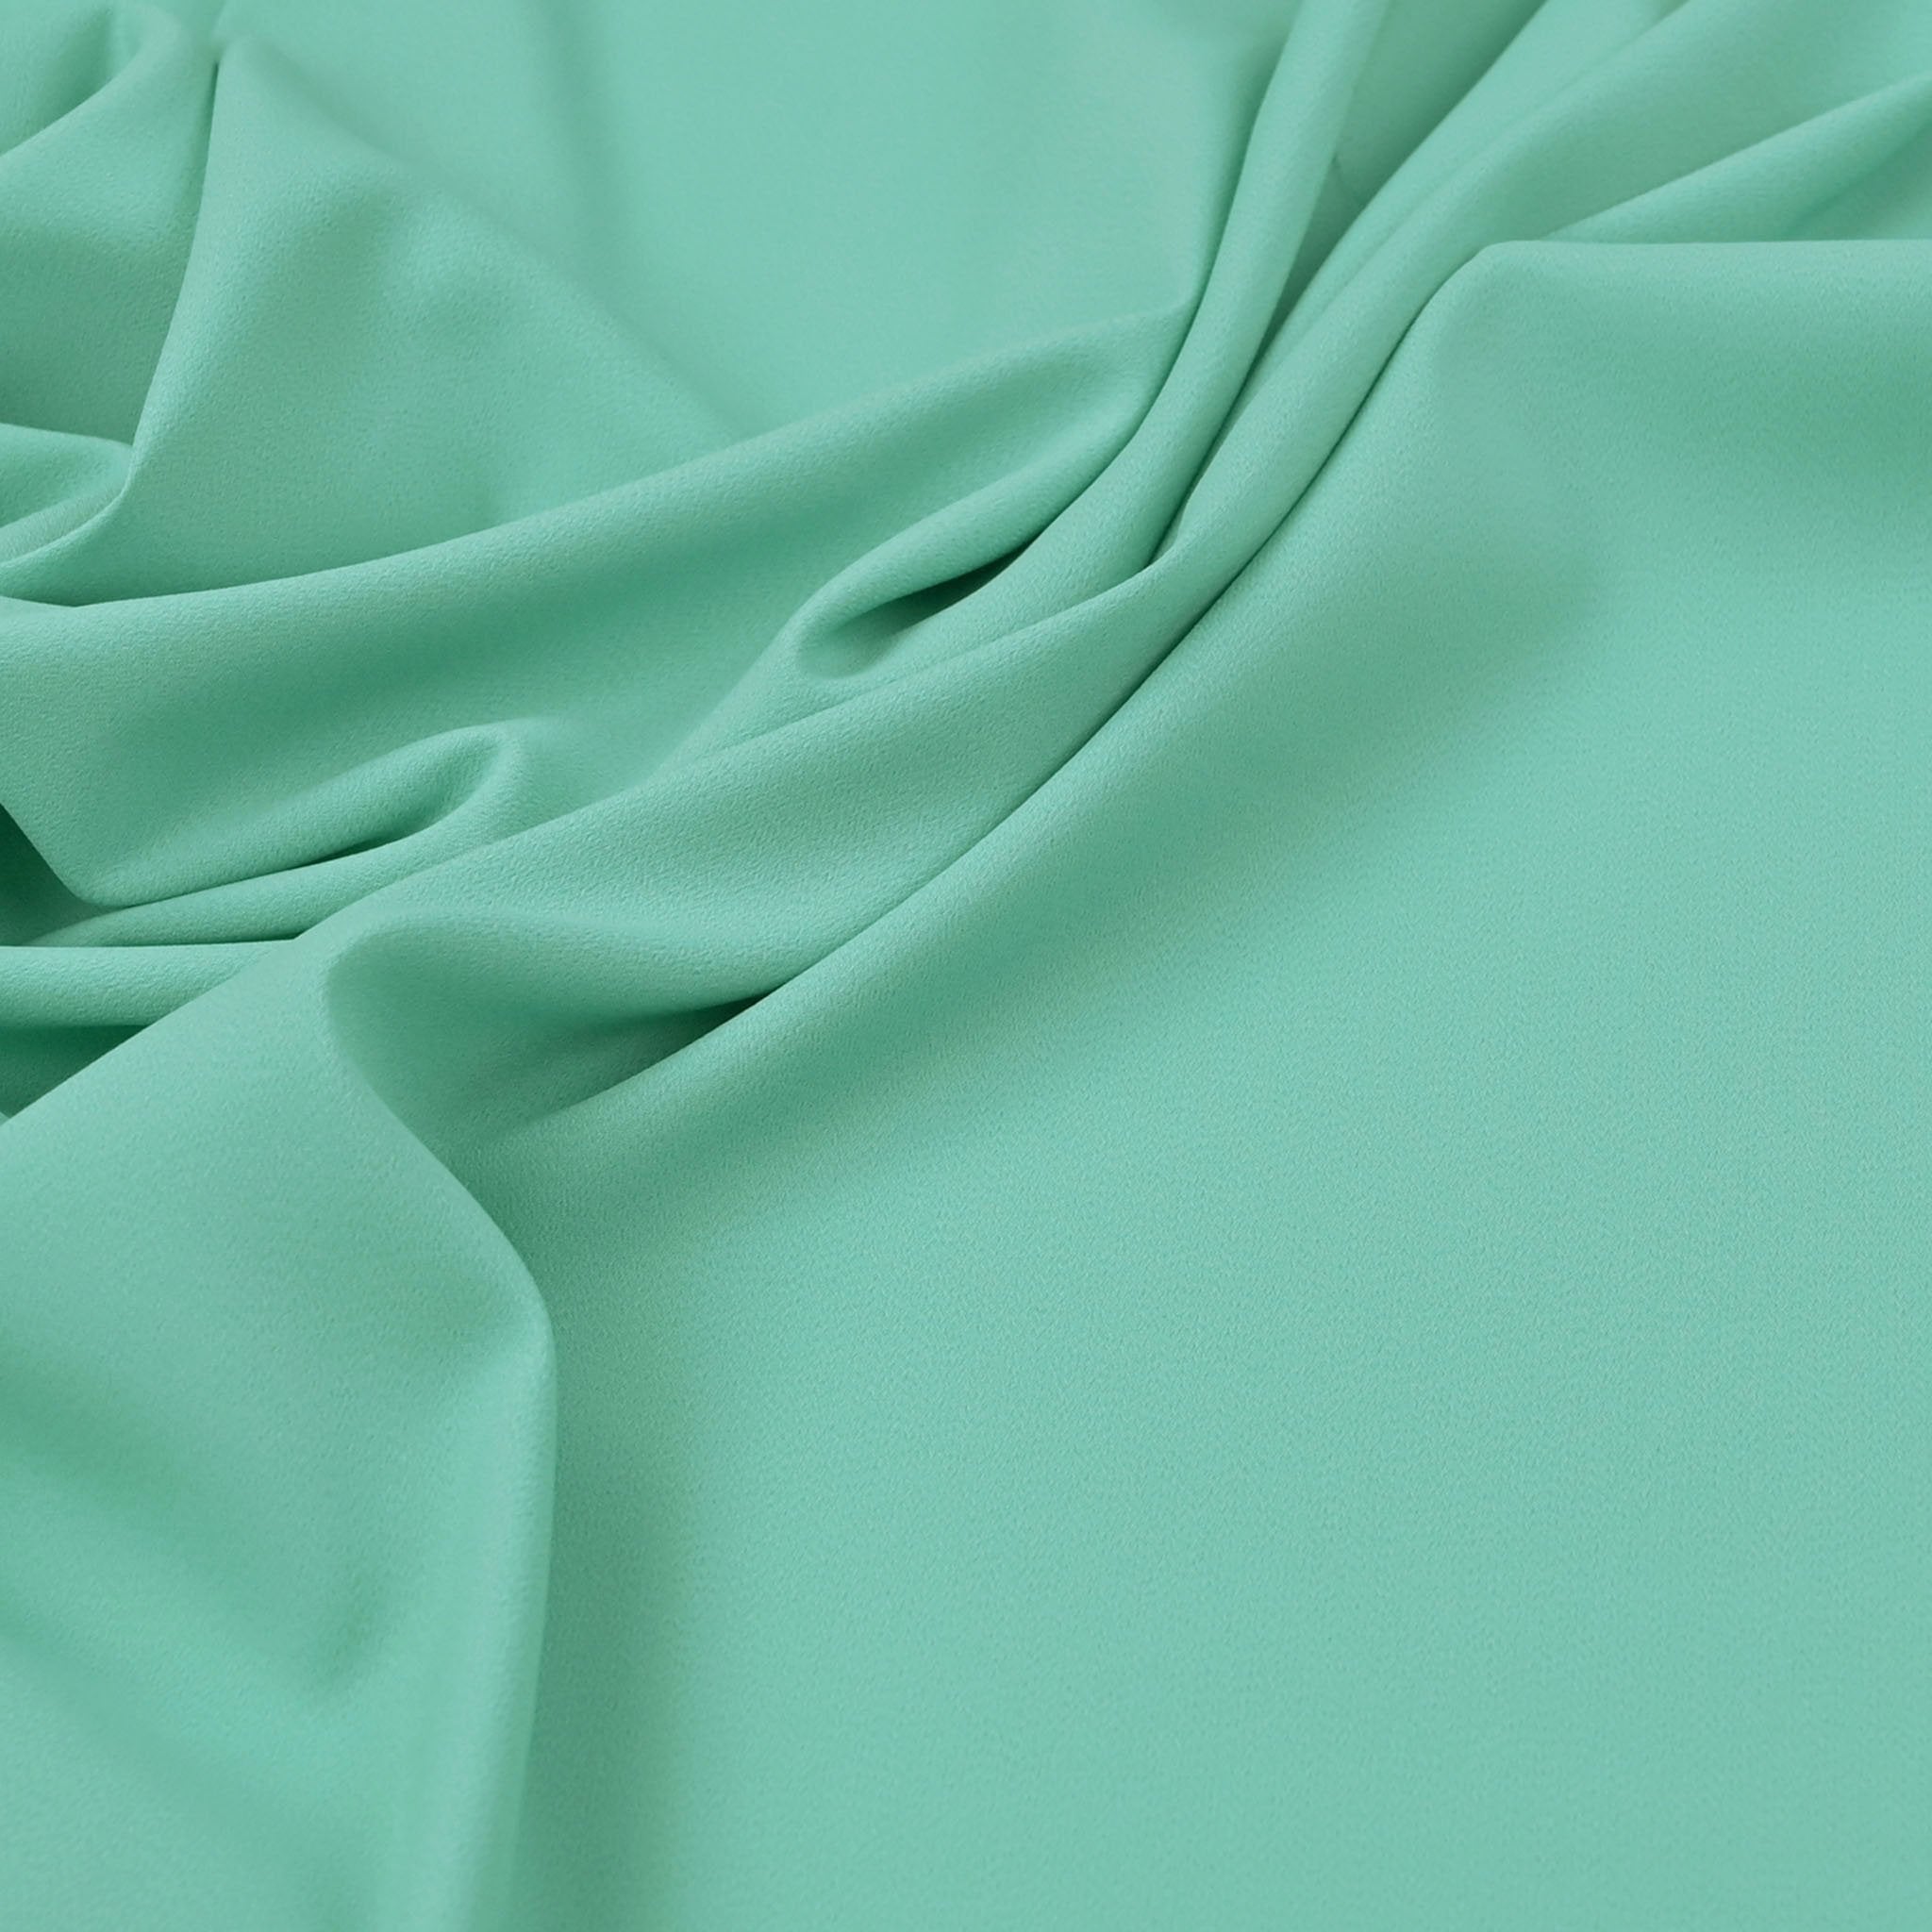 Aqua Green Crepe Fabric 97193